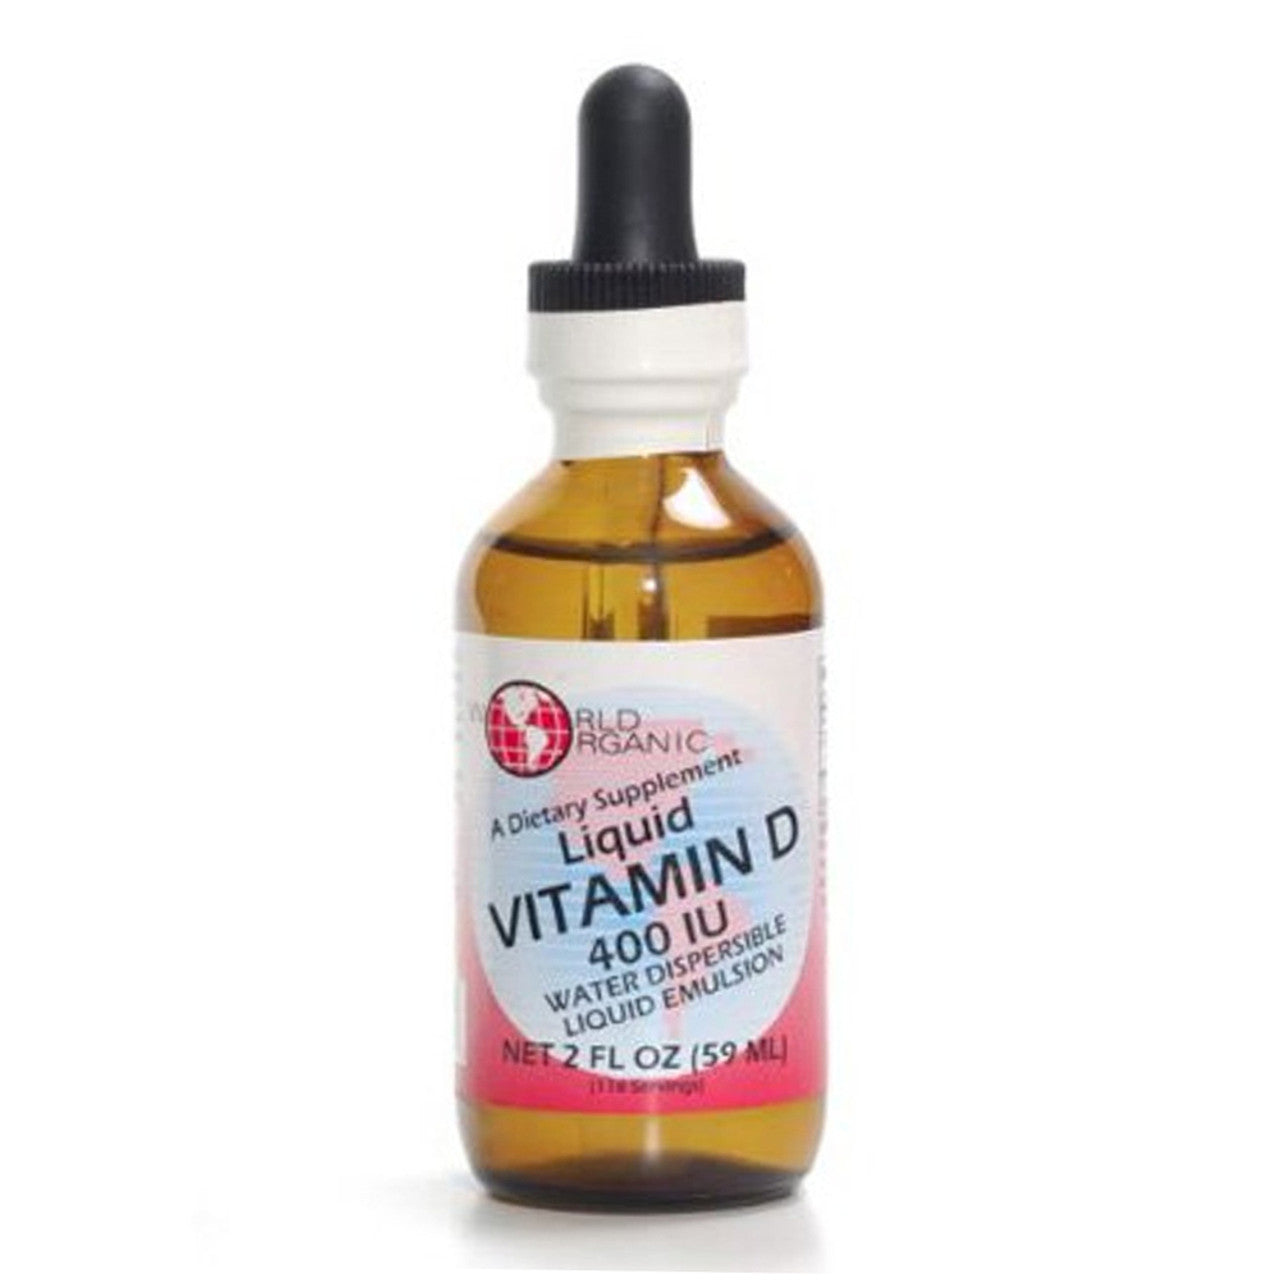 World Organic Liquid Vitamins amin D Supplement Dropper, 400 Iu, 2 Oz